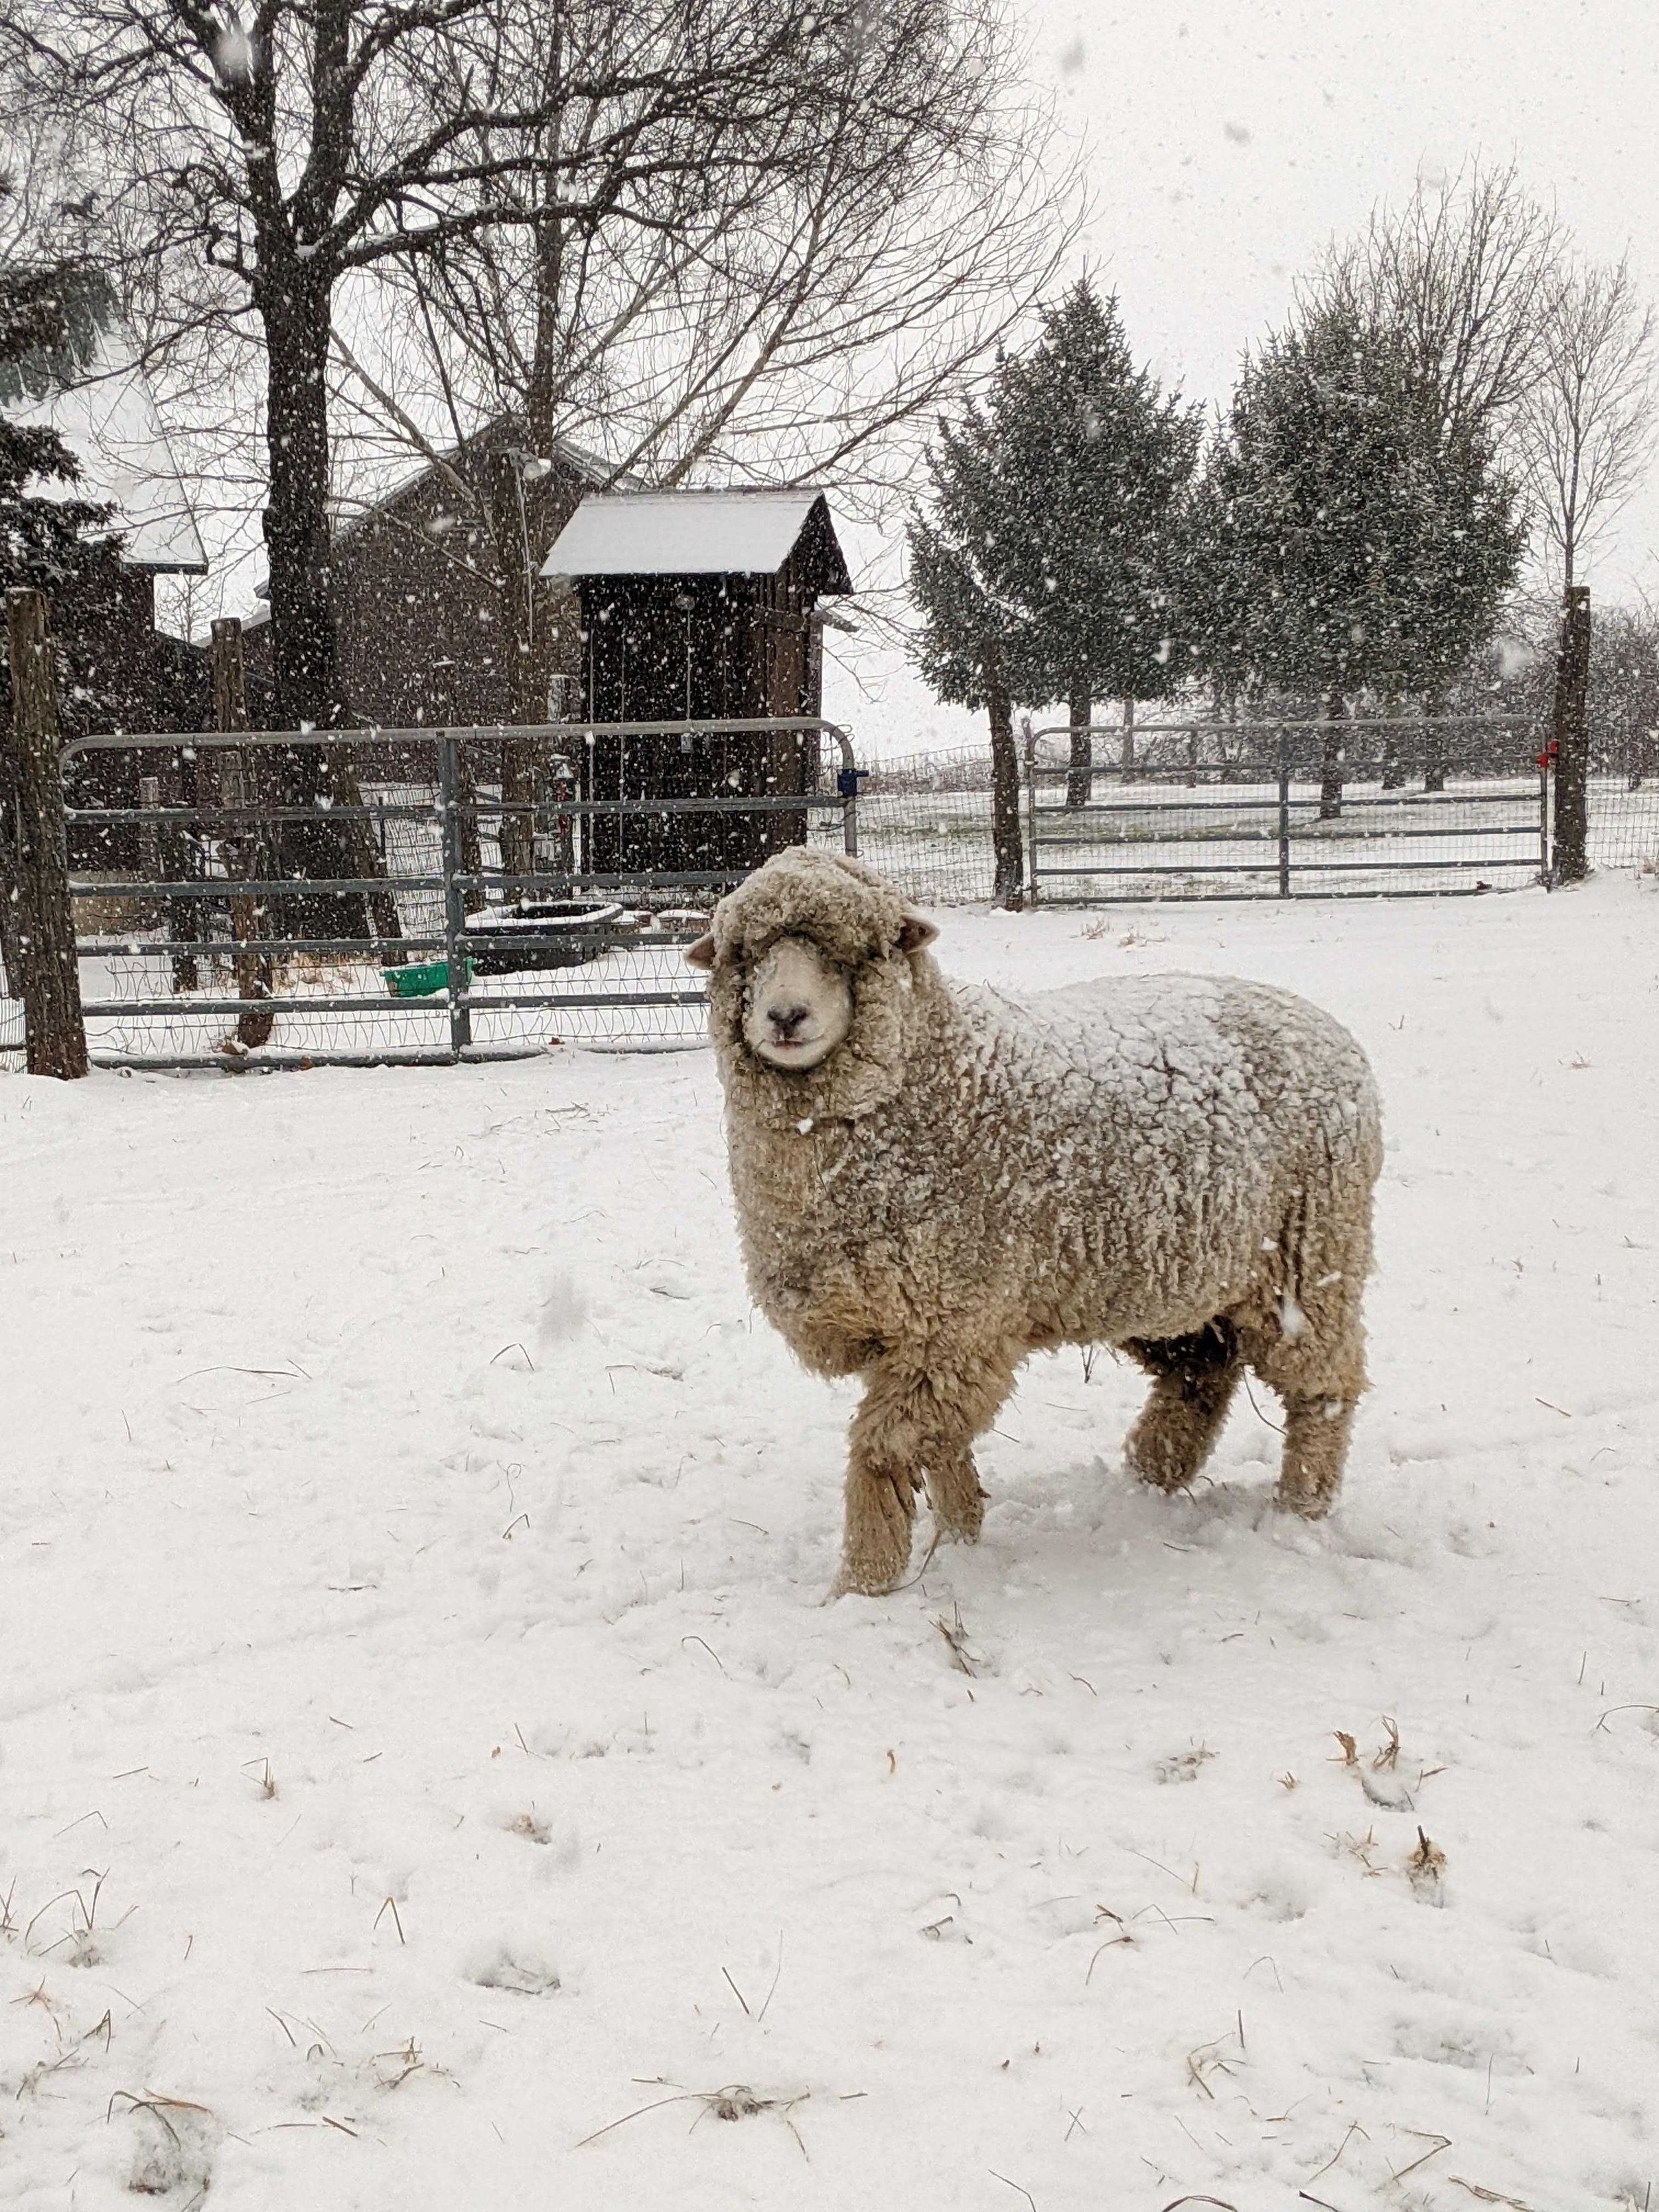 Sheep in the snow at Seairra's farm